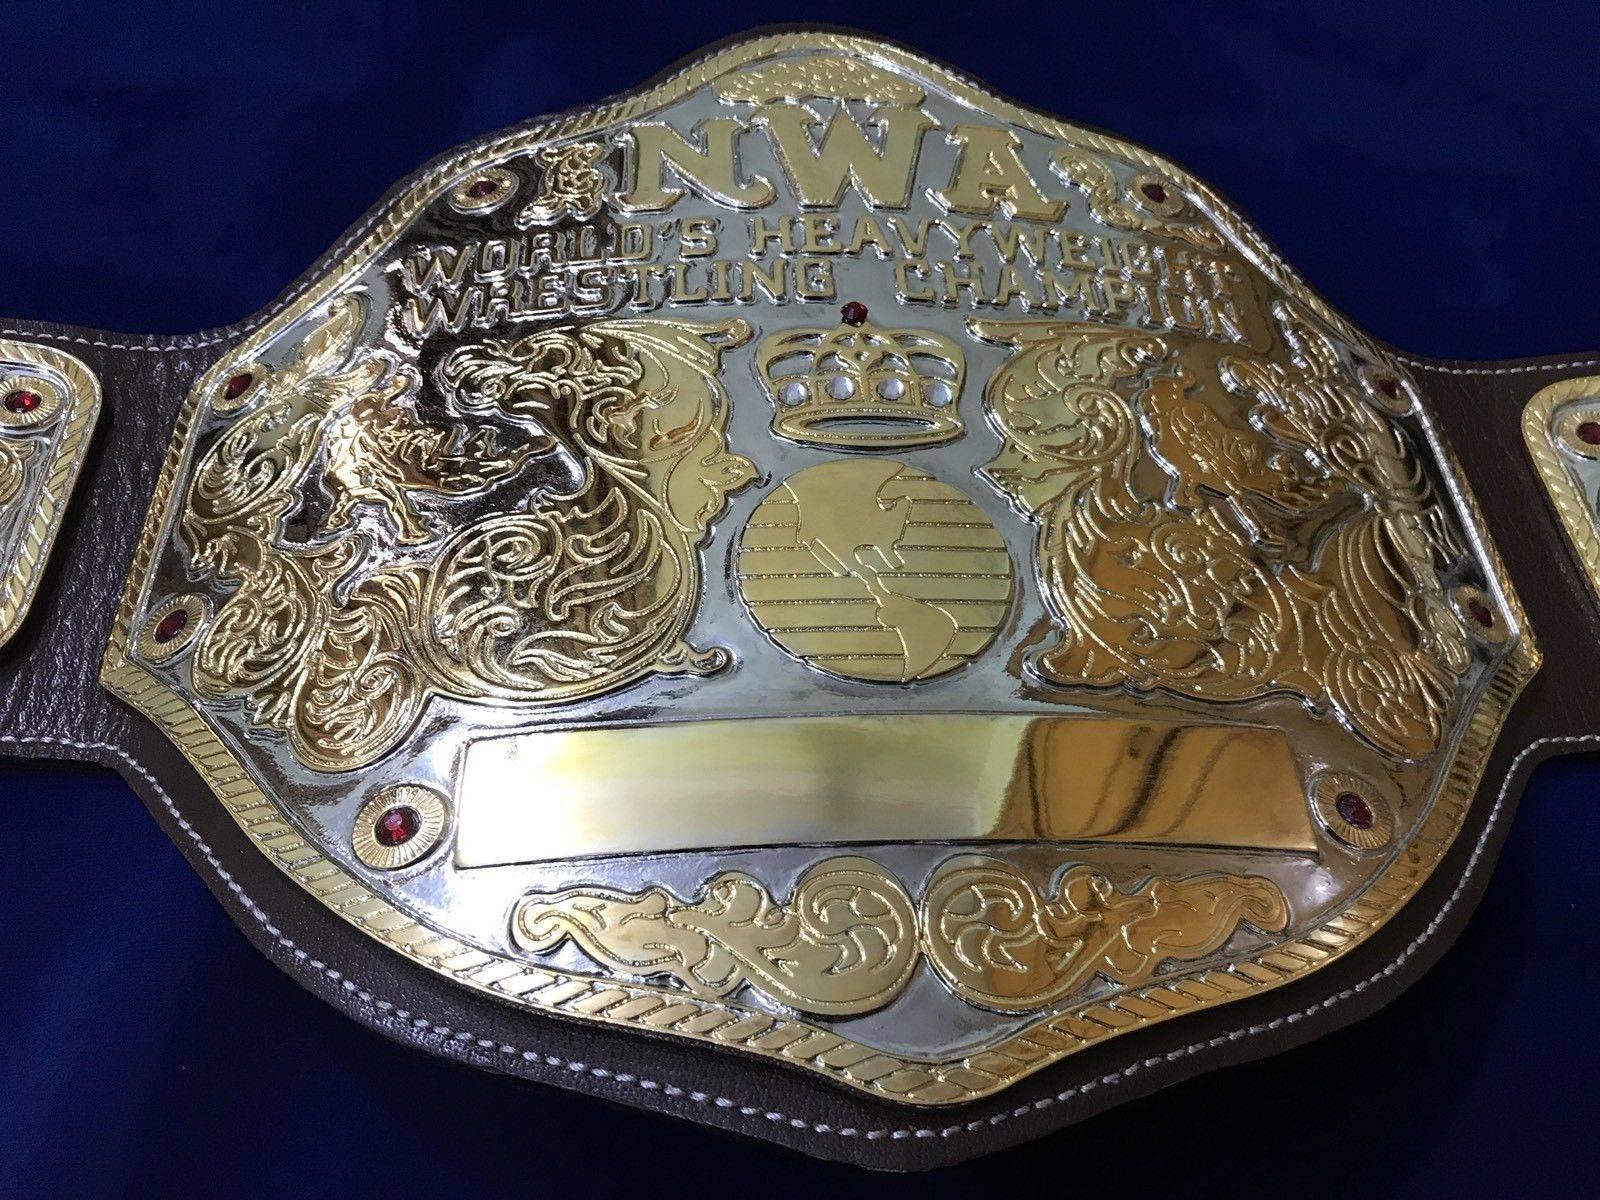 Nwa Big Gold Championship Belt